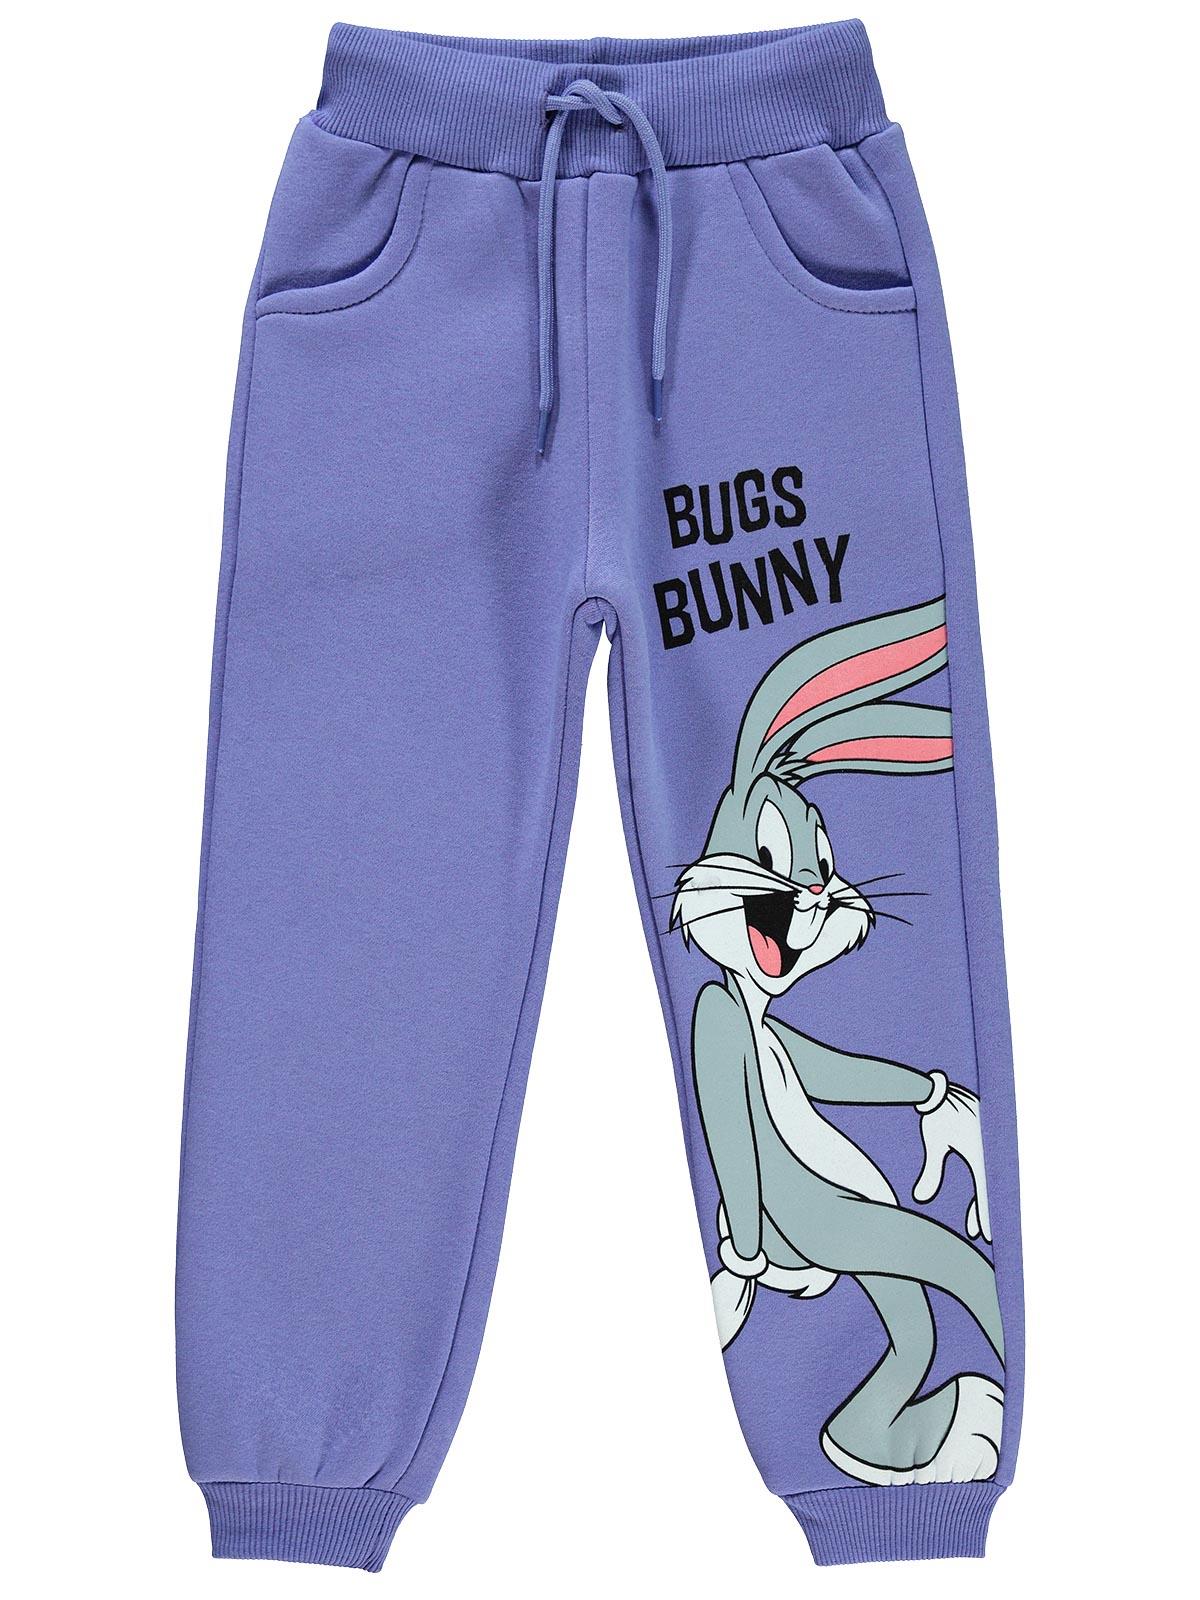 Bugs Bunny Kız Çocuk Eşofman Altı 10-13 Yaş Mor